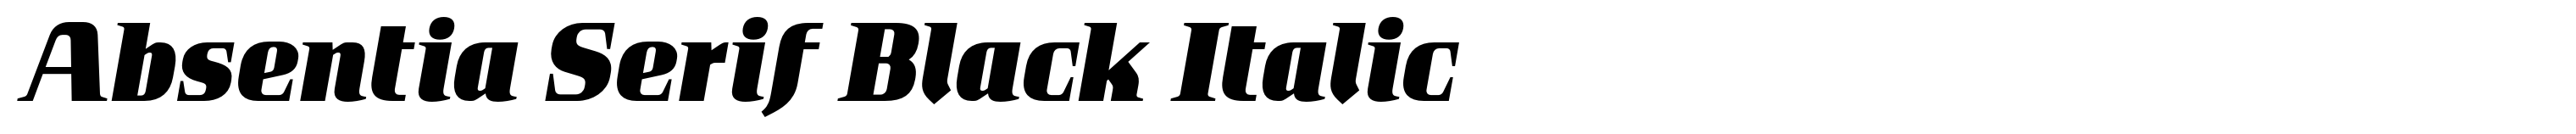 Absentia Serif Black Italic